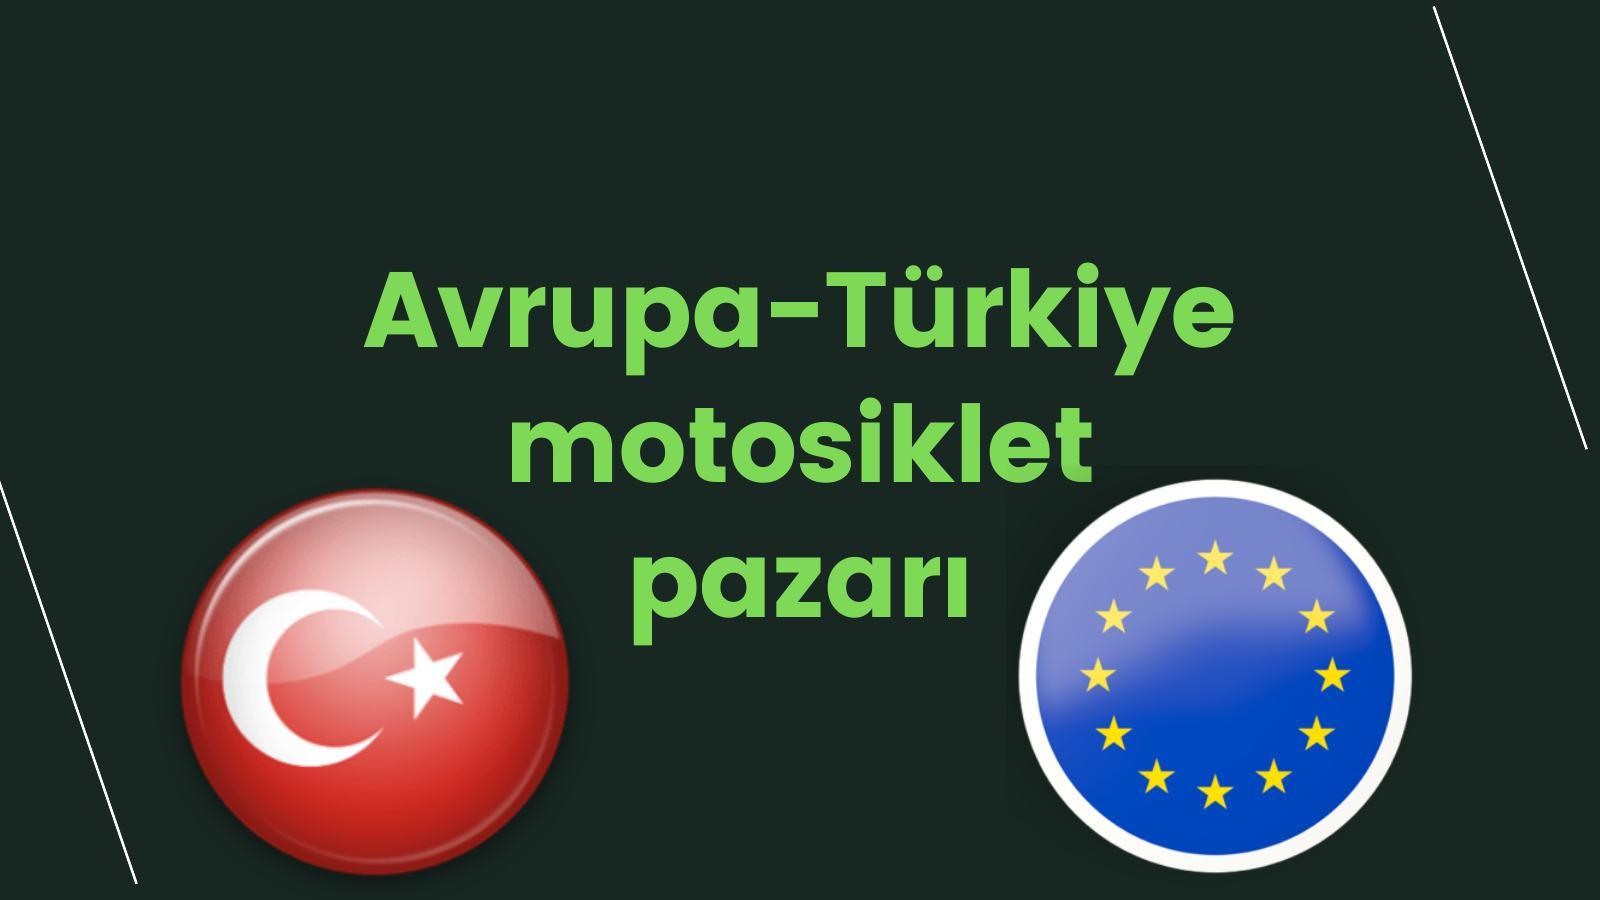 Avrupa-Türkiye motosiklet pazarı kapak görseli